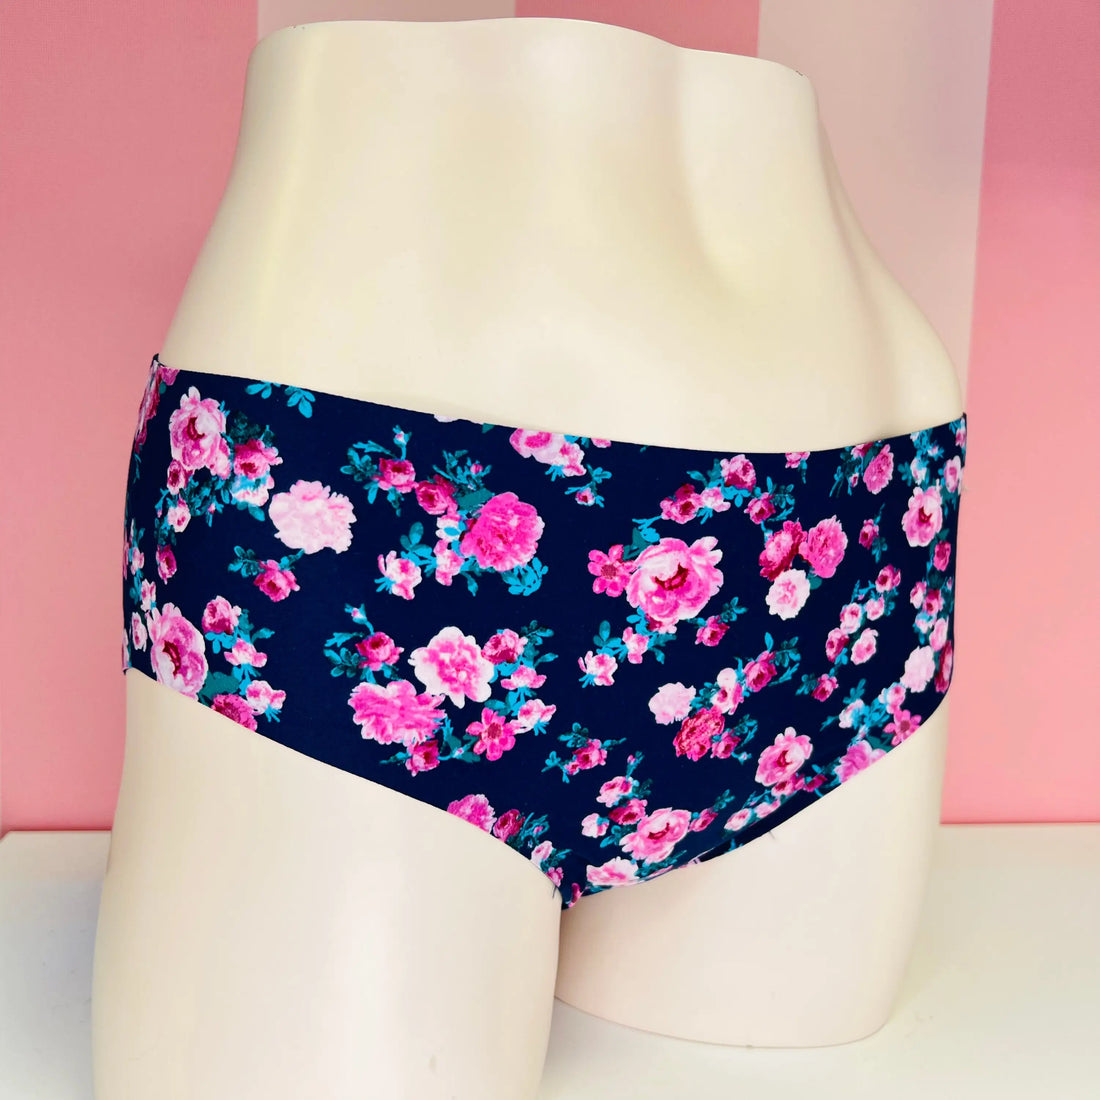 Kalhotky se vzory květin - L / Barevná / Nové štítky - Victoria’s Secret